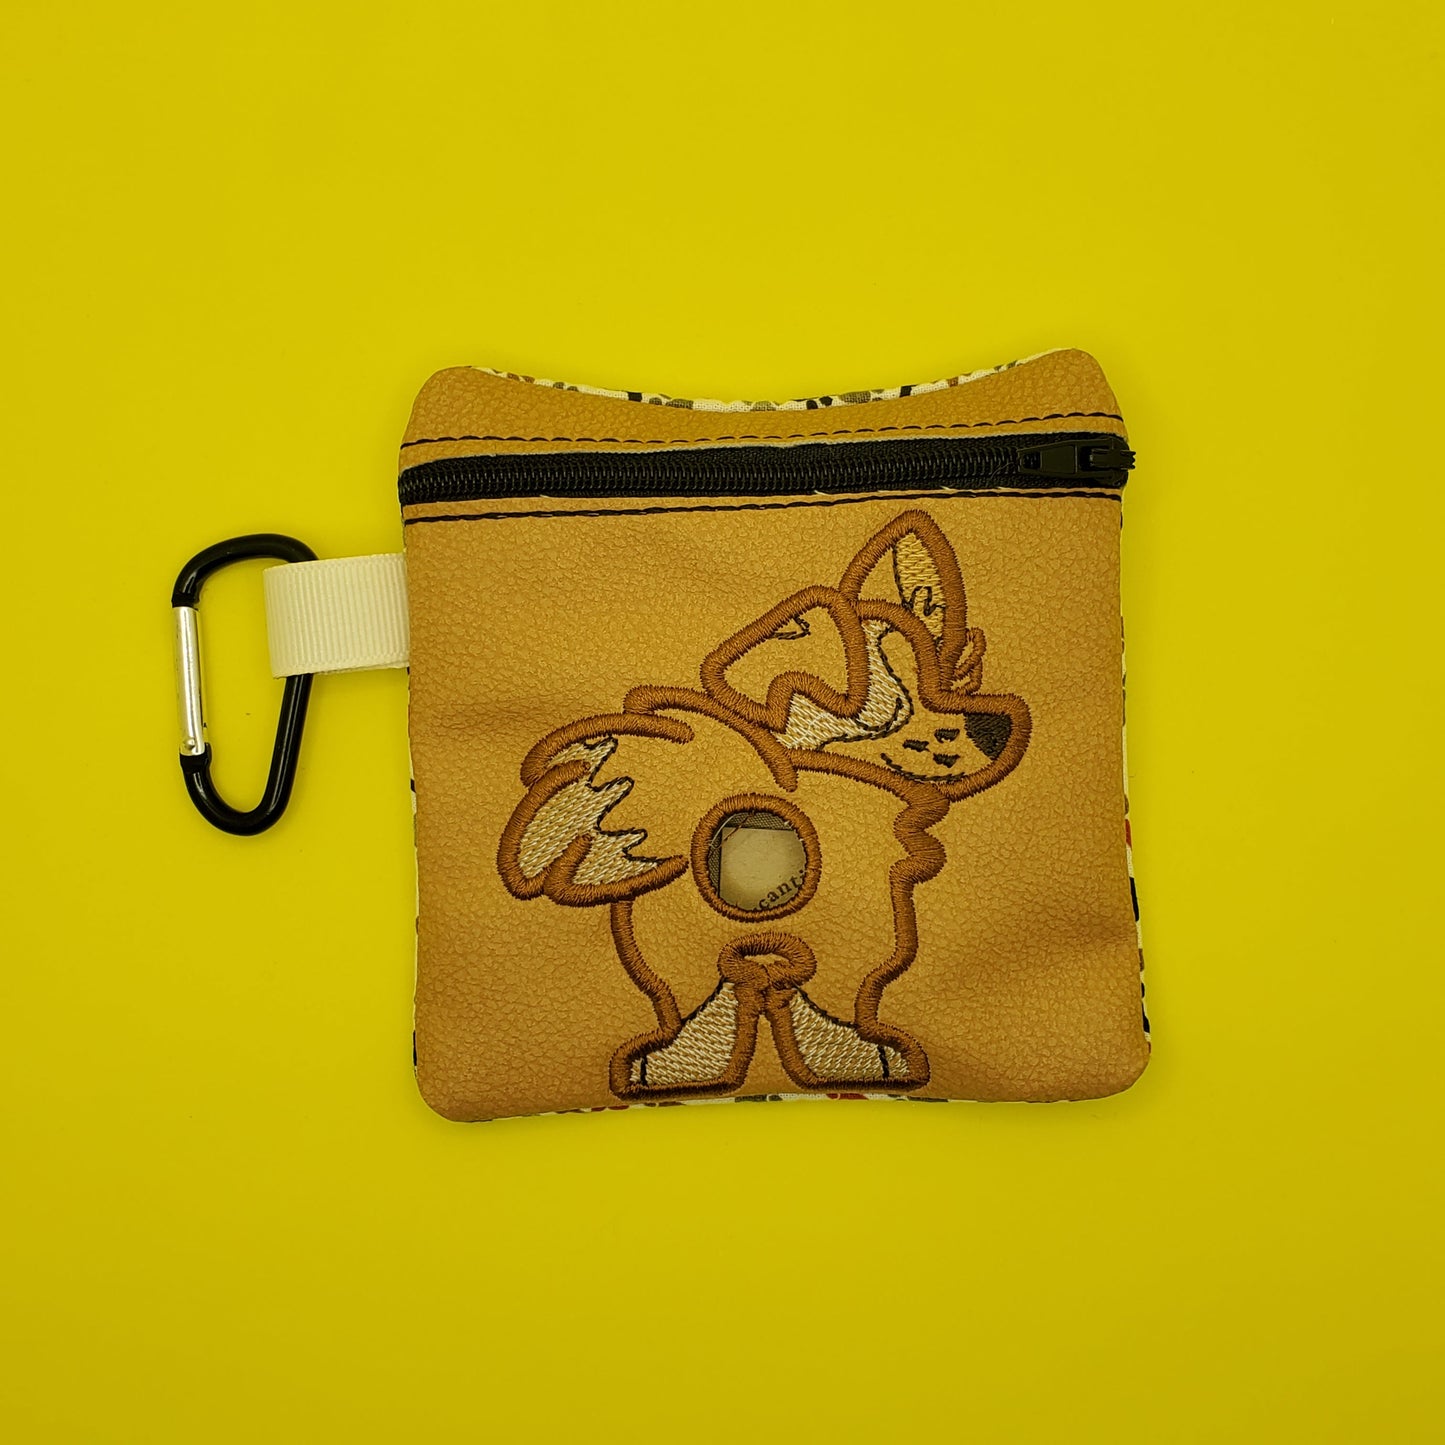 Border Collie / MIxed Breed - Dog Poo Bag Holder / Pet Poo/waste bag holder